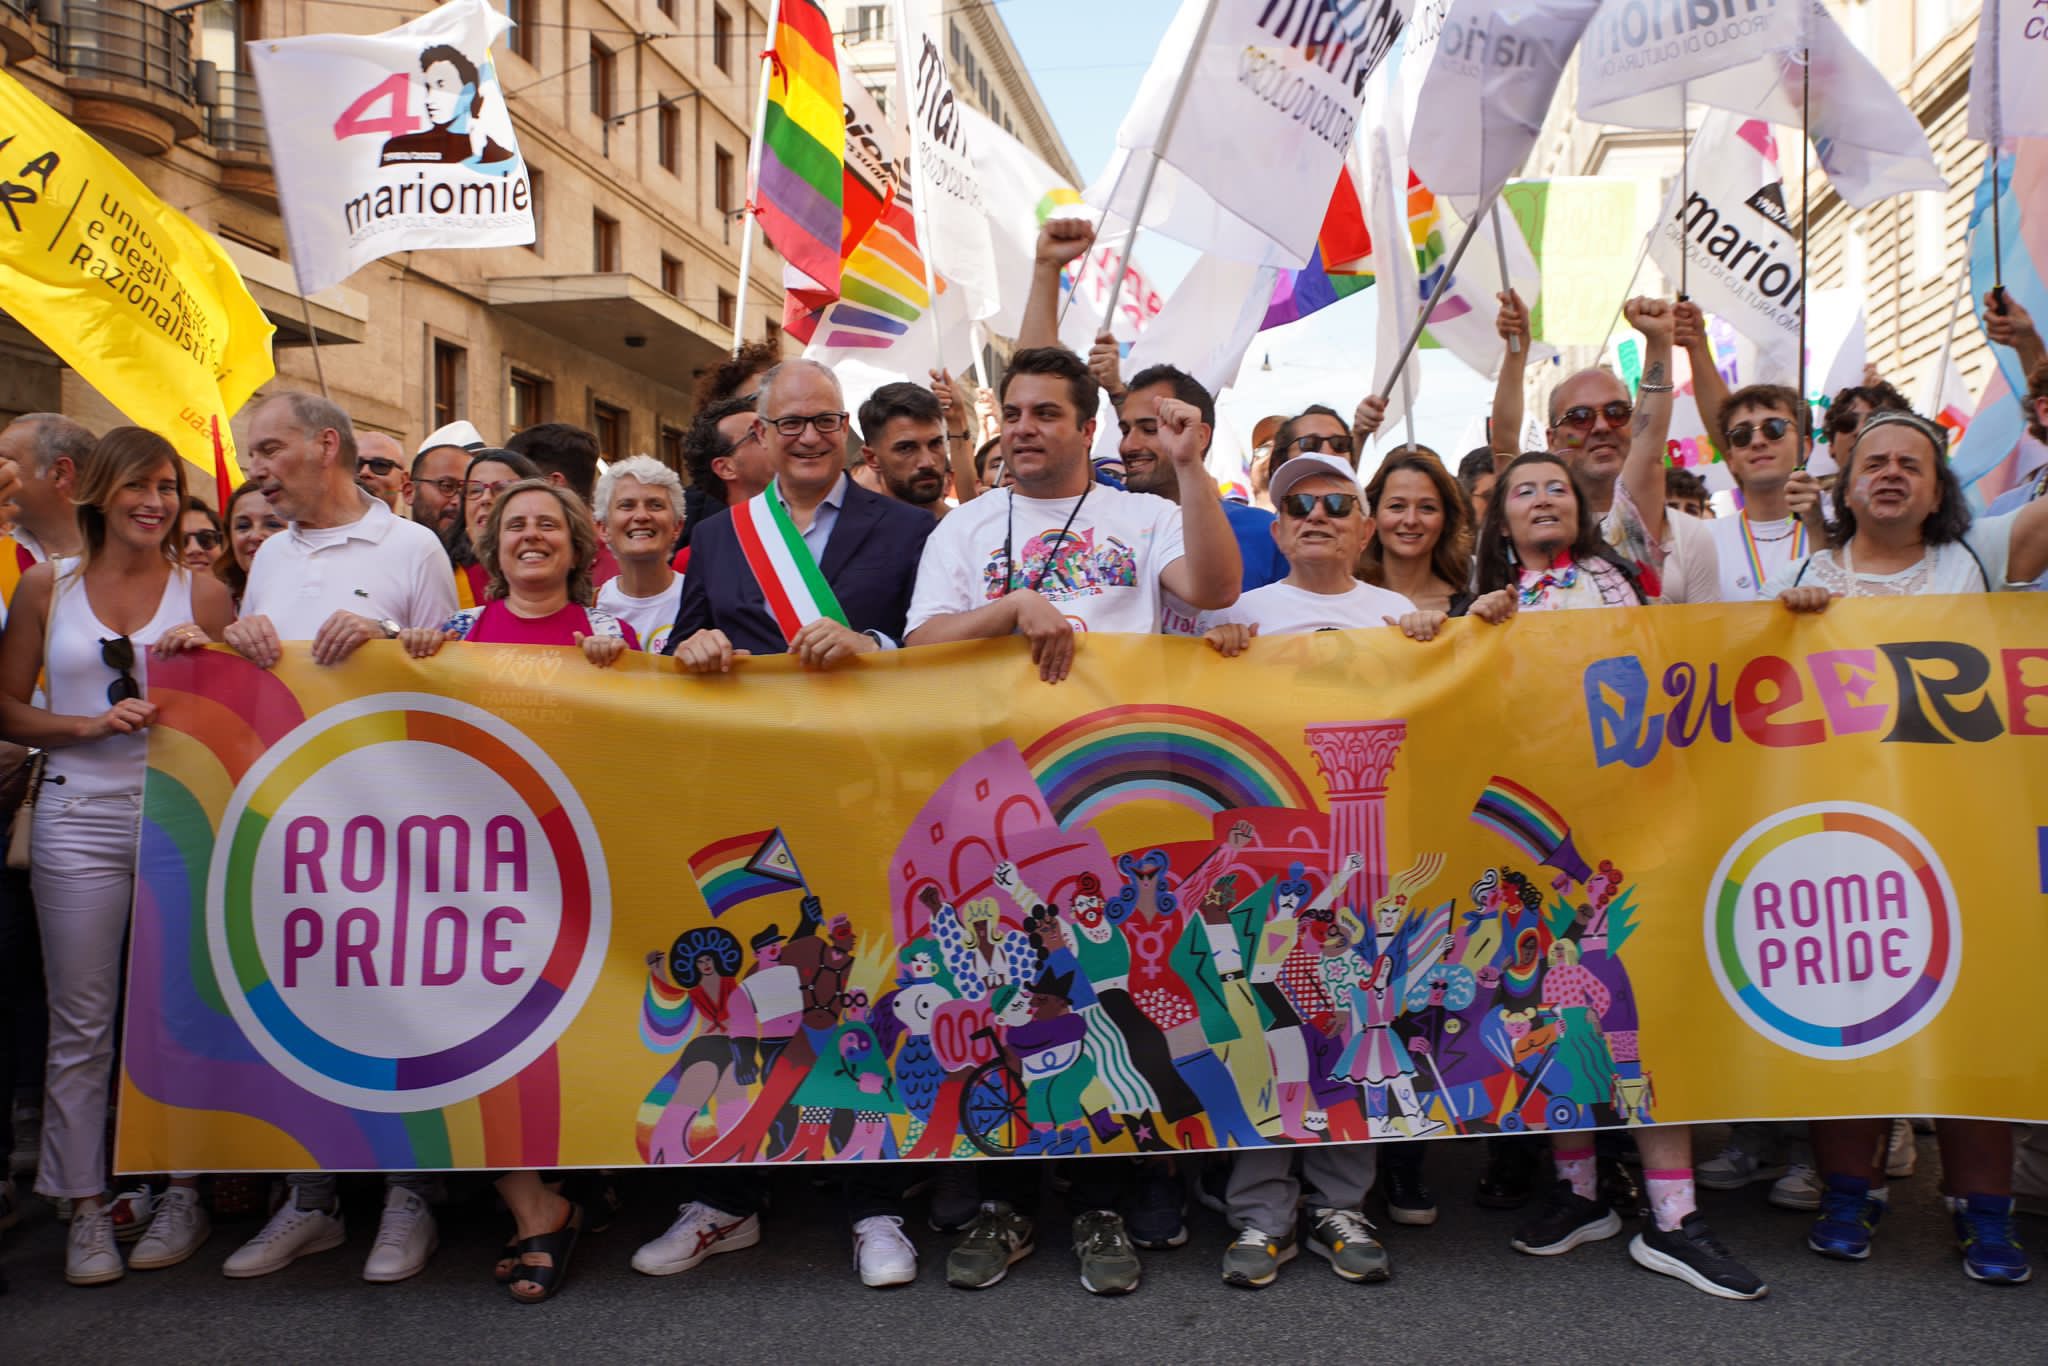 Roma Pride, festa arcobaleno:  in migliaia  celebrano la "Queerresistenza"